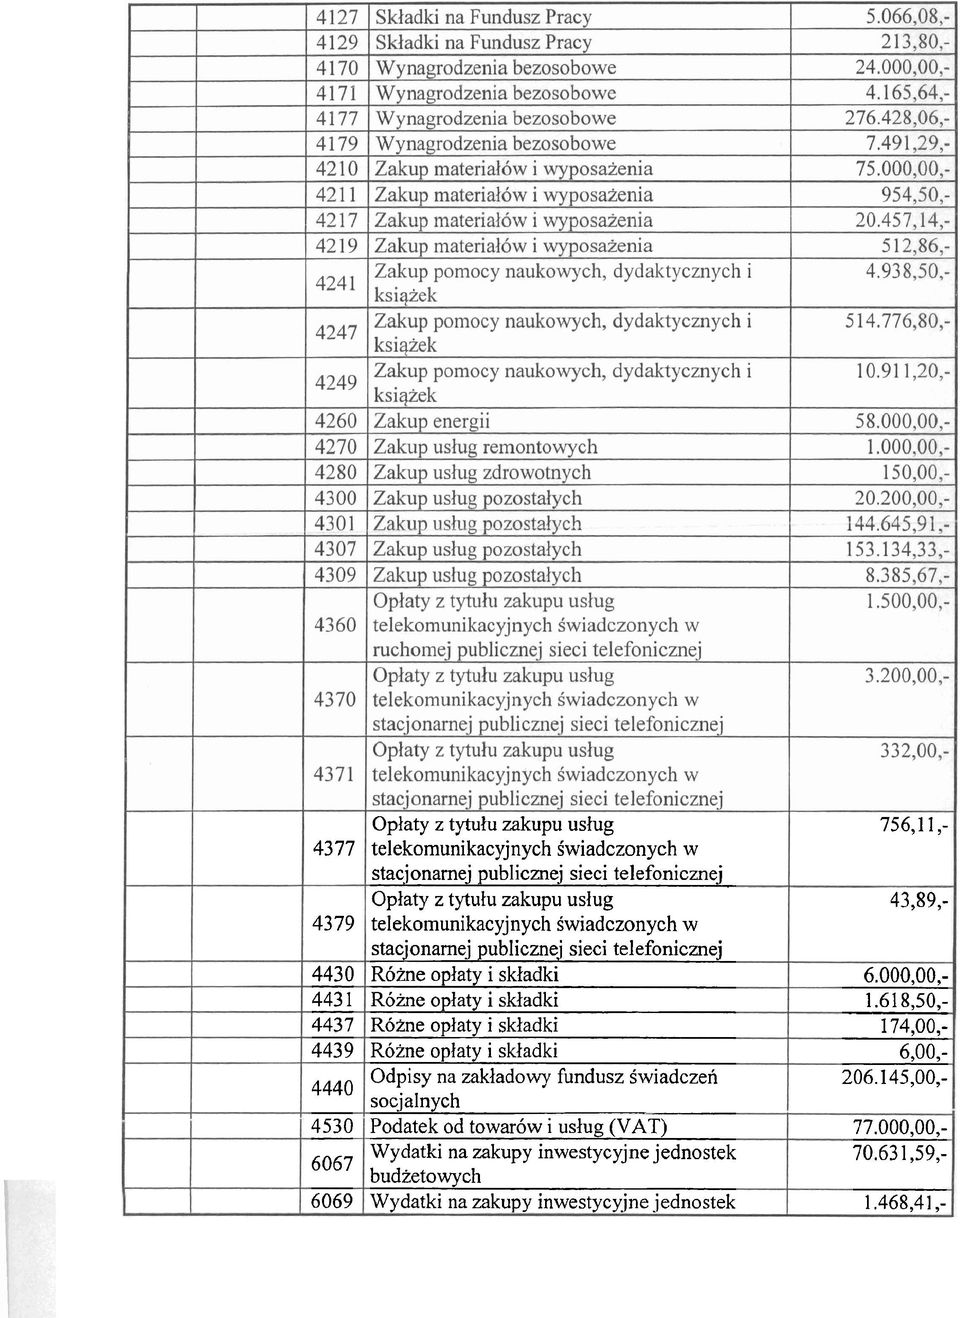 skladki Odpisy na zakladowy fundusz Swiadczen socjalnych Podatek od towar6w i uslug (VAT) Wydatki na zakupy inwestycyjne jednostek